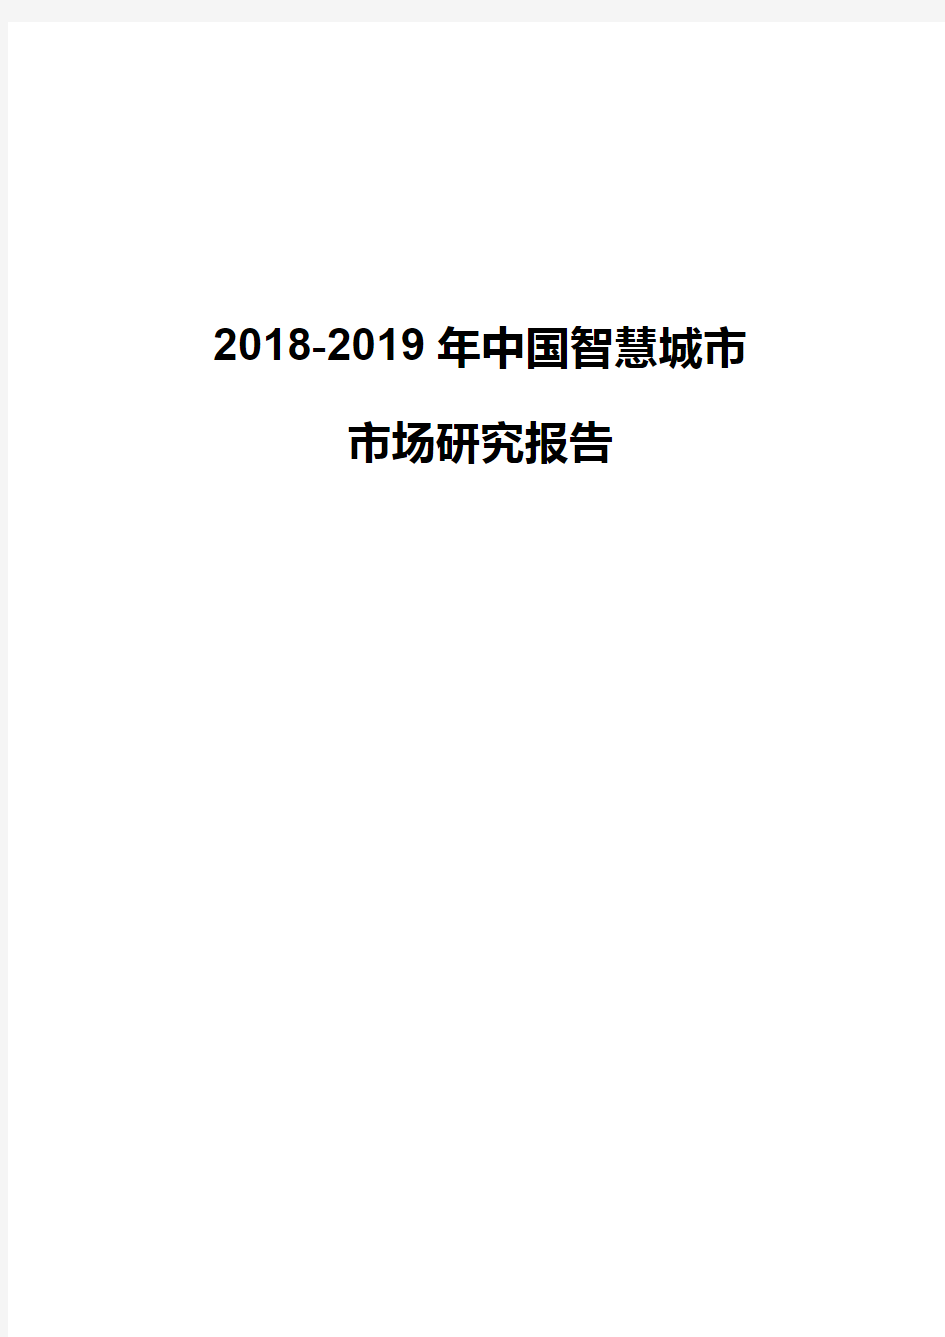 2018-2019年度中国智慧城市市场研究报告